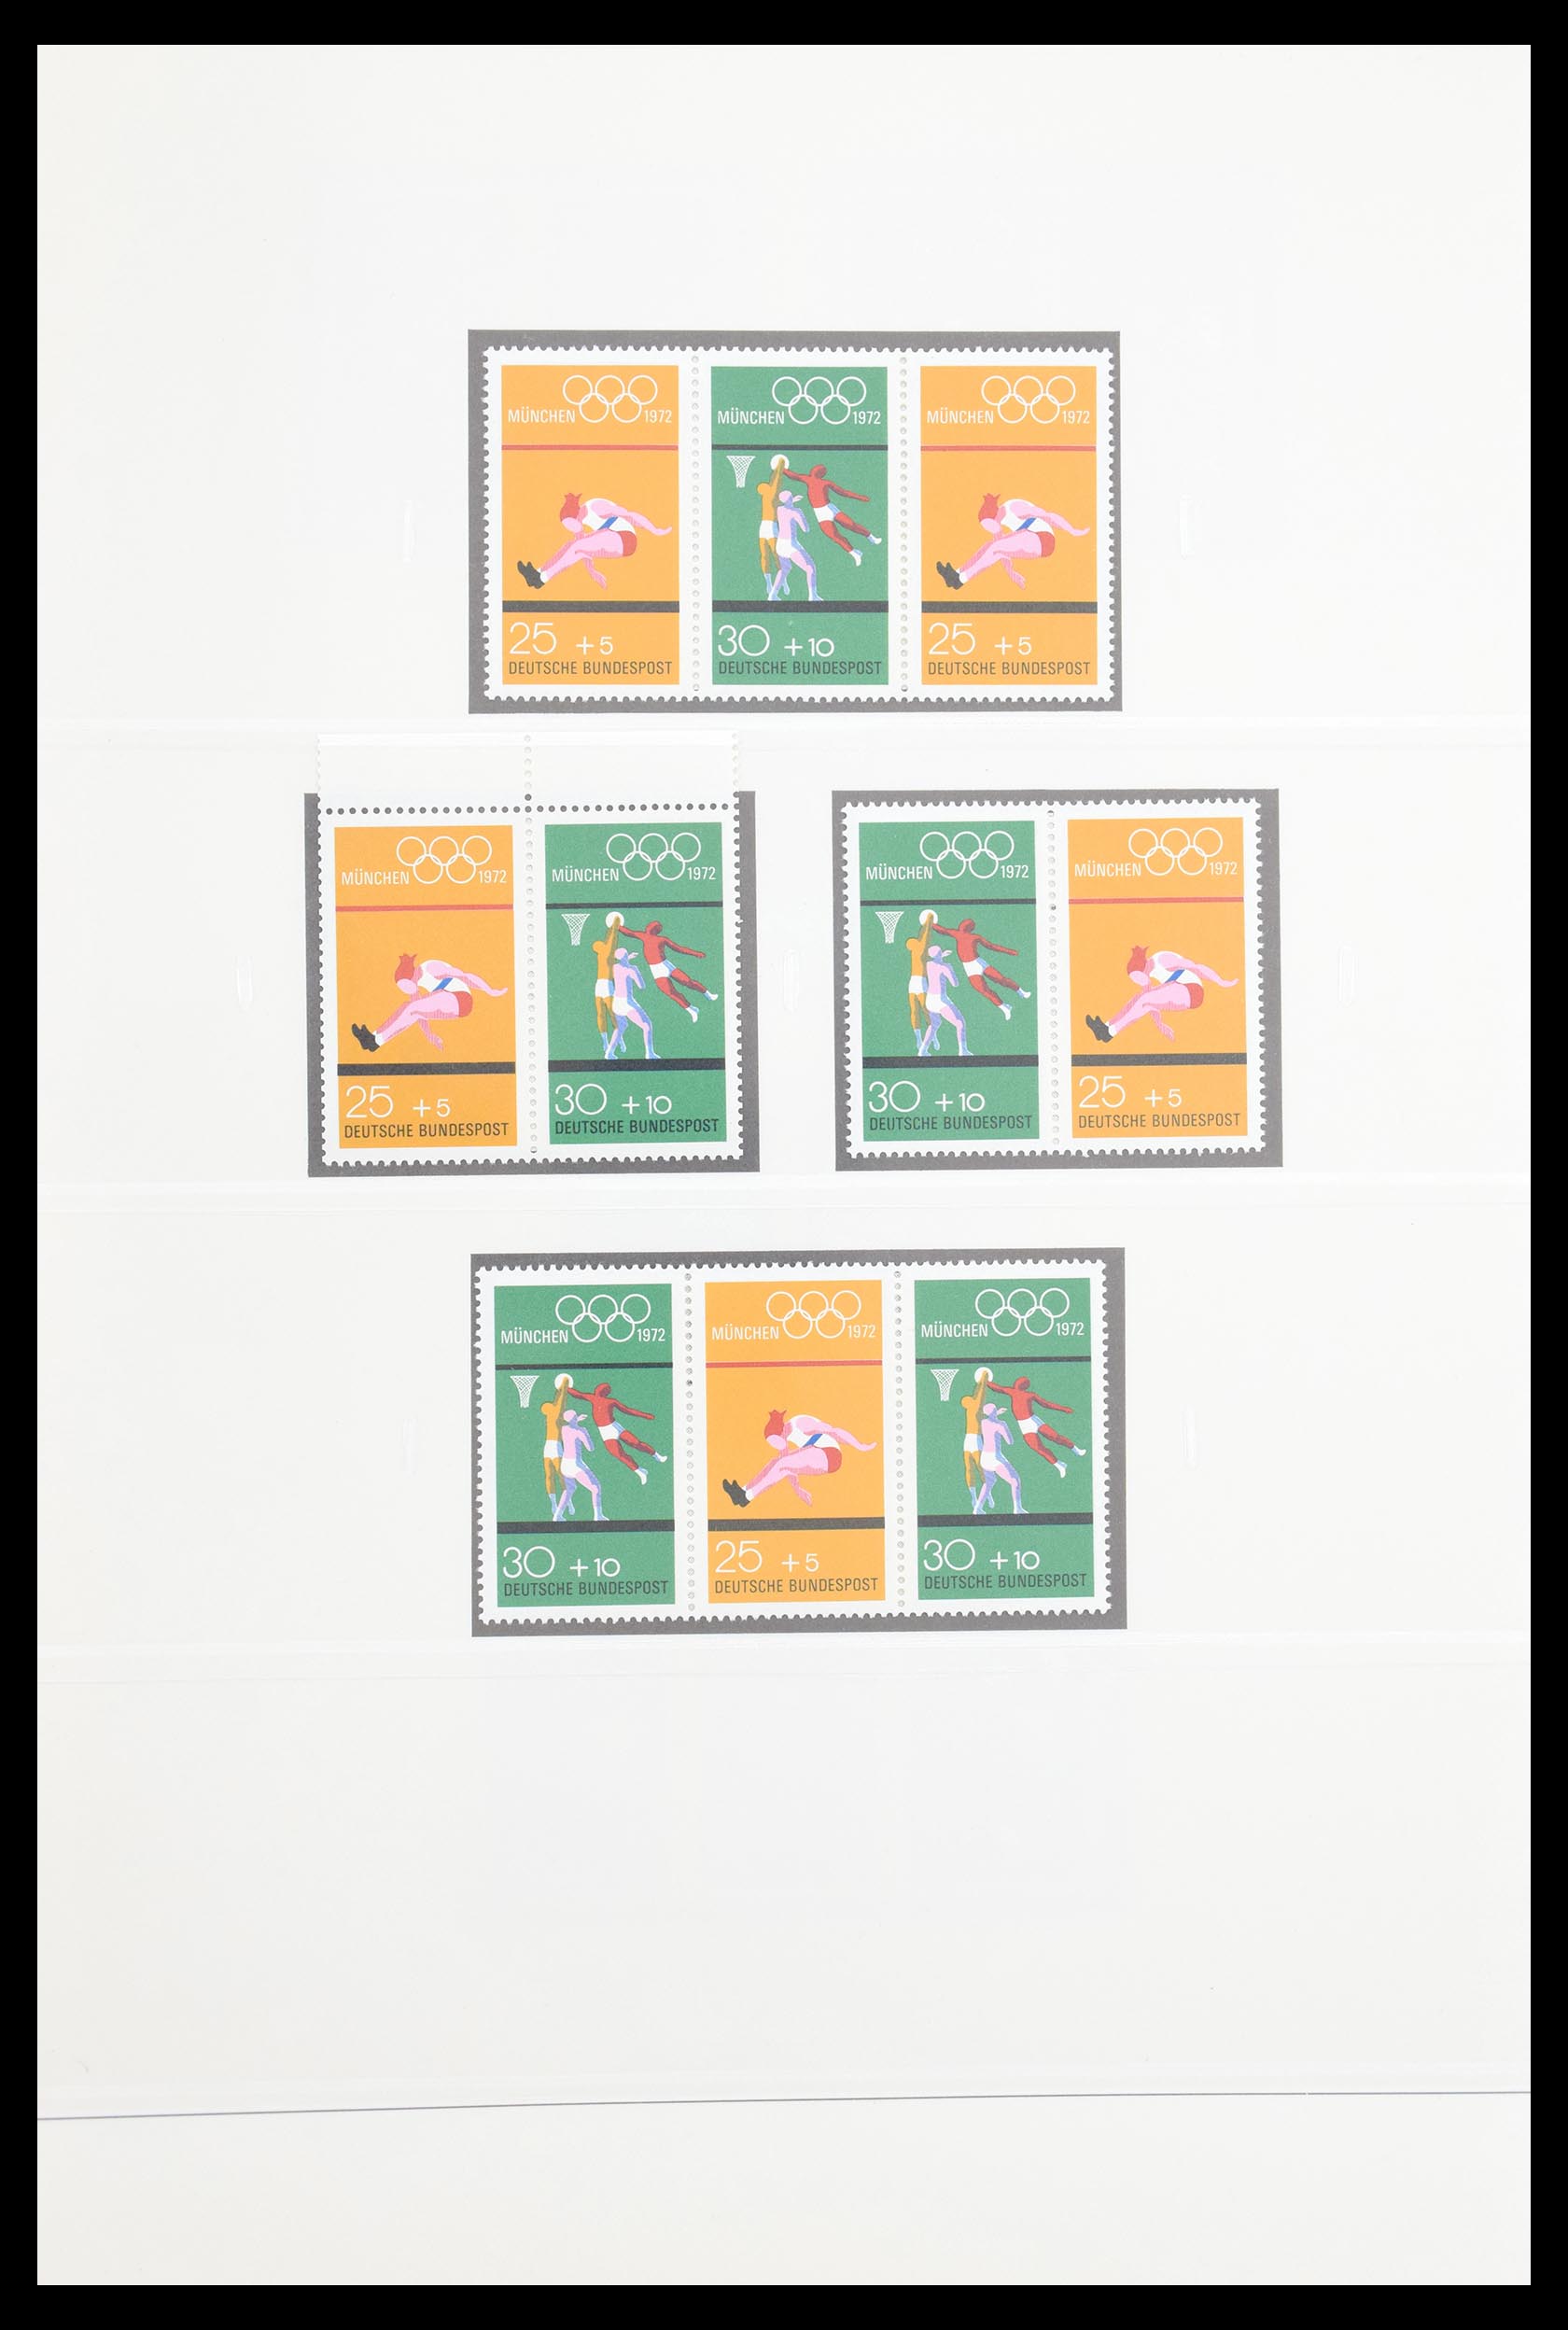 30605 032 - 30605 Bundespost combinaties 1951-1974.